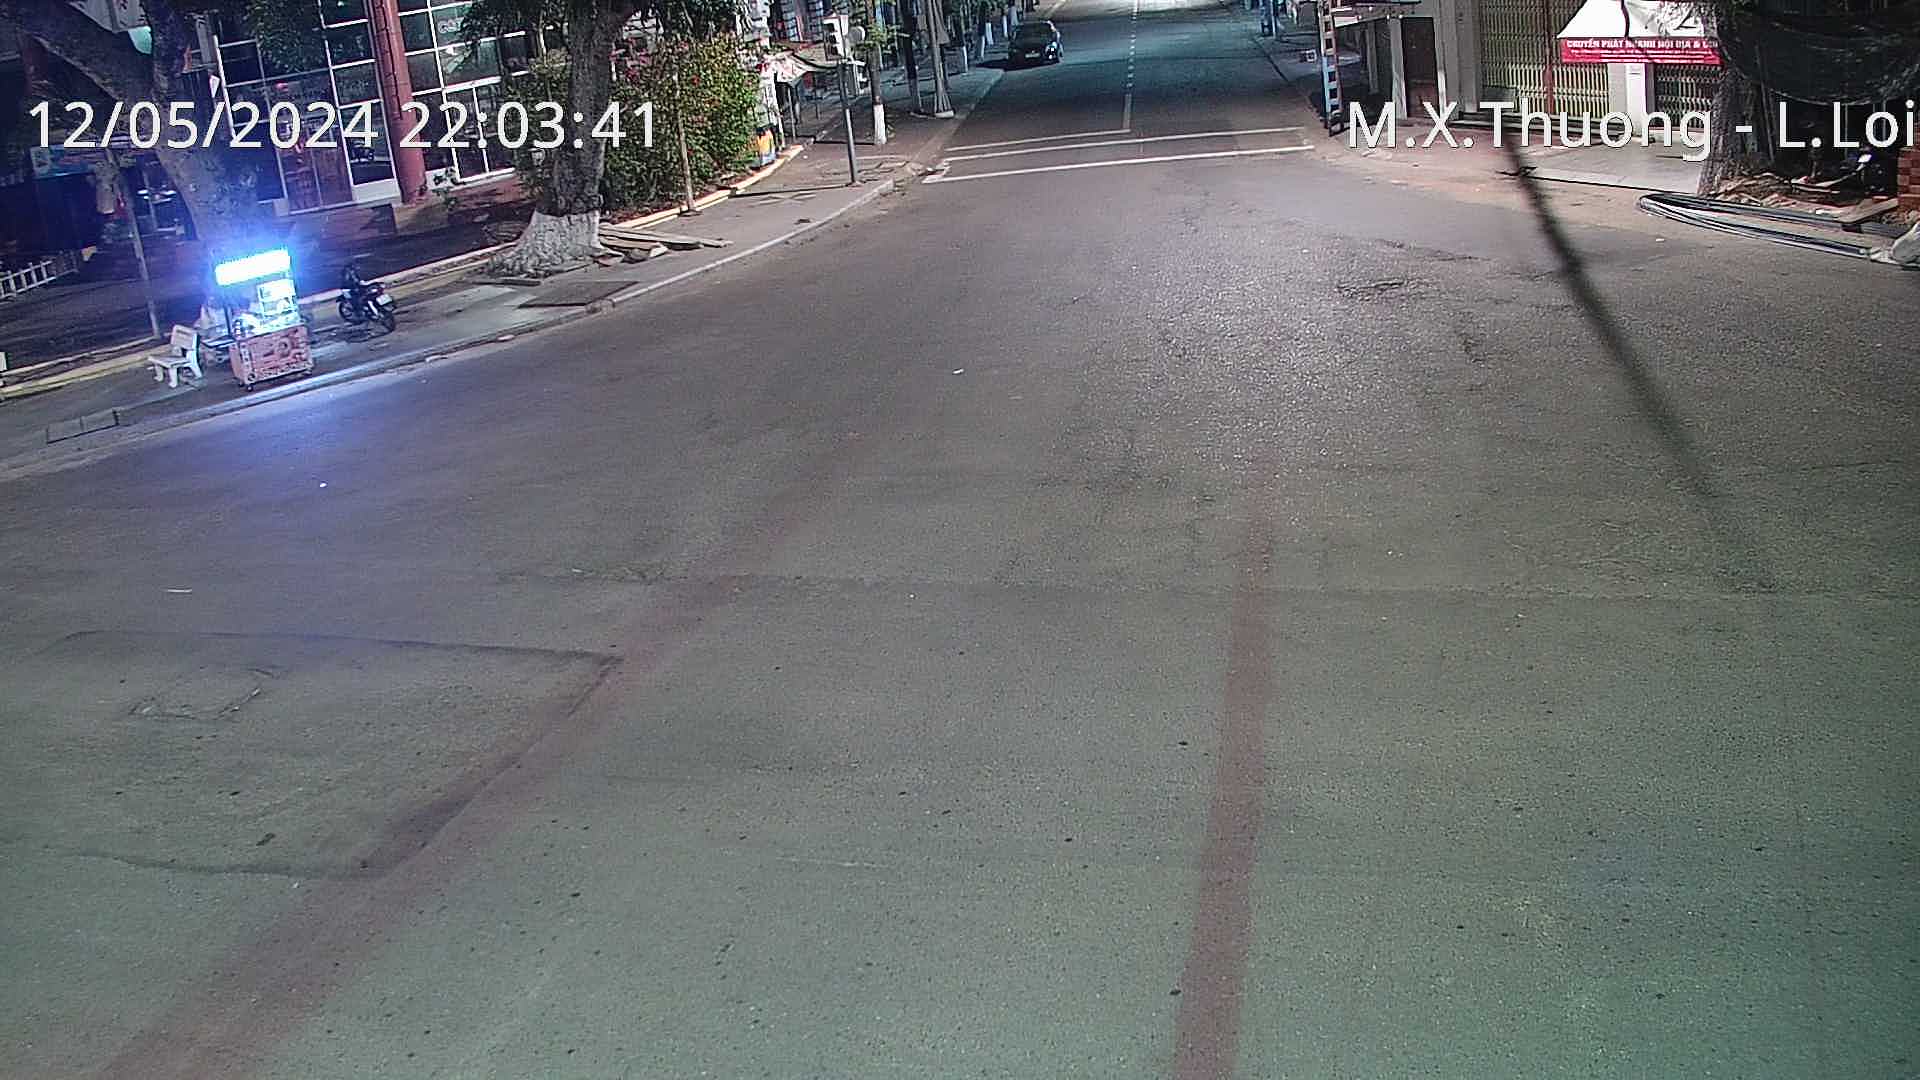 Xem camera giao thông Quy Nhơn Bình Định hình ảnh camera tuyến đường Ngã 4 Mai Xuân Thưởng - Lê Hồng Phong